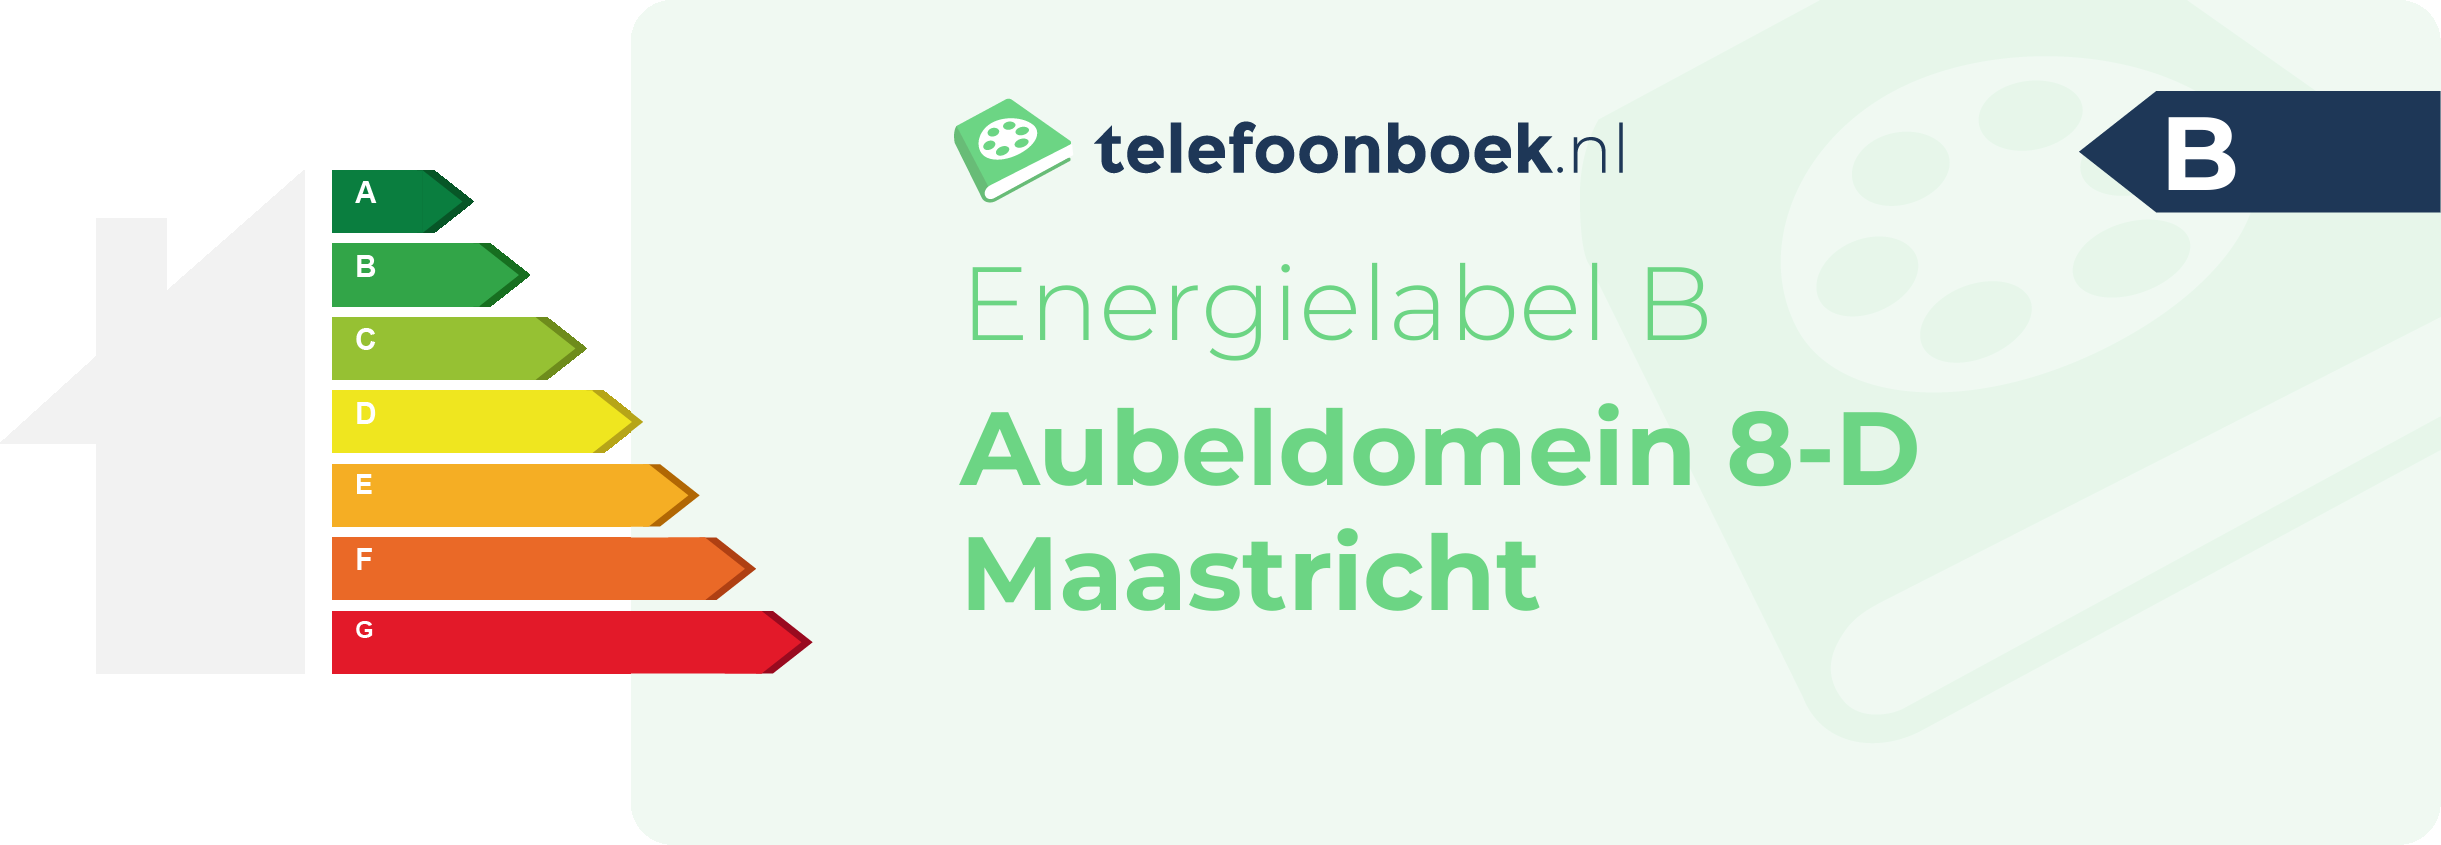 Energielabel Aubeldomein 8-D Maastricht